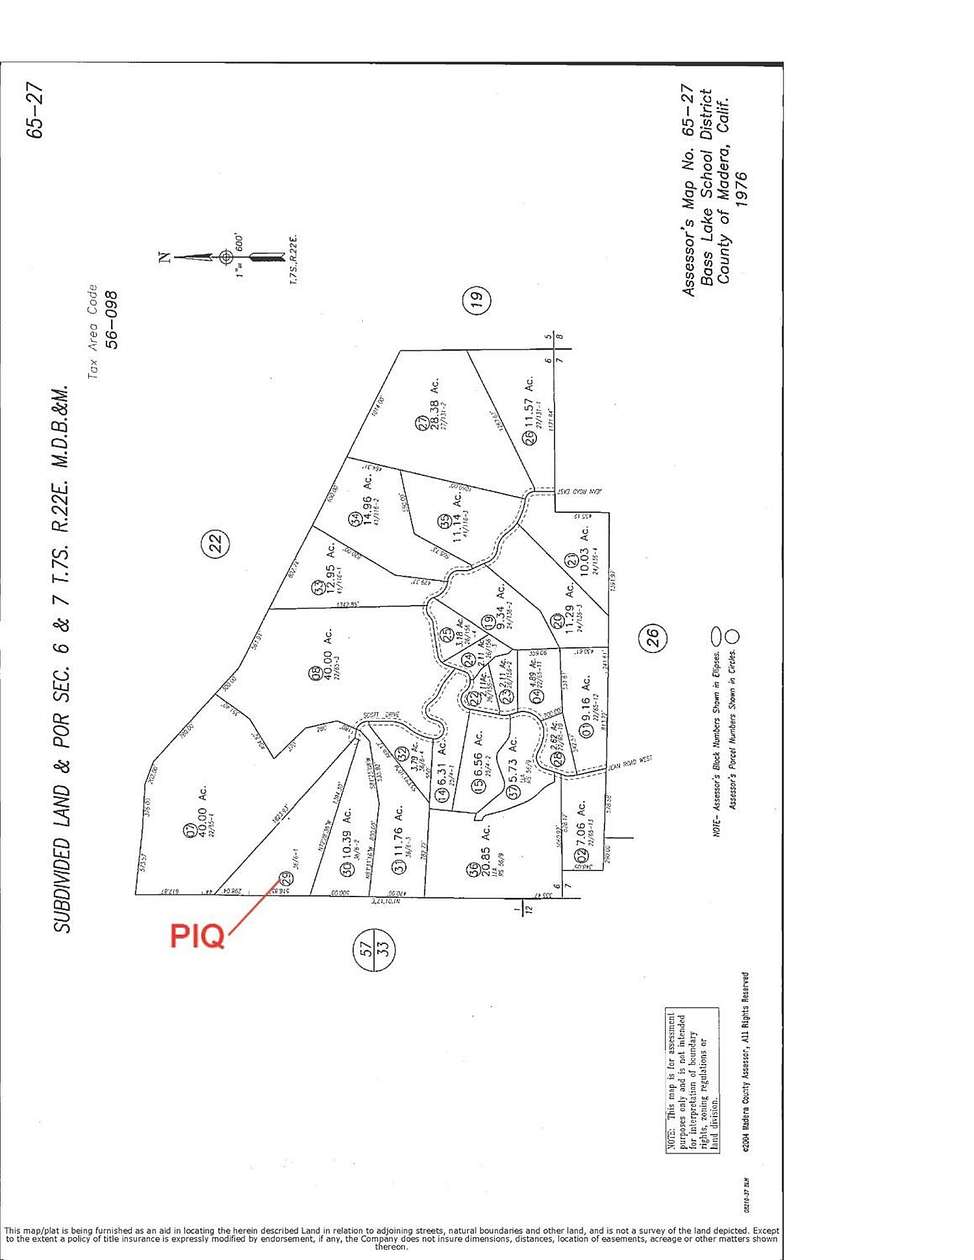 13.5 Acres of Land for Sale in Oakhurst, California